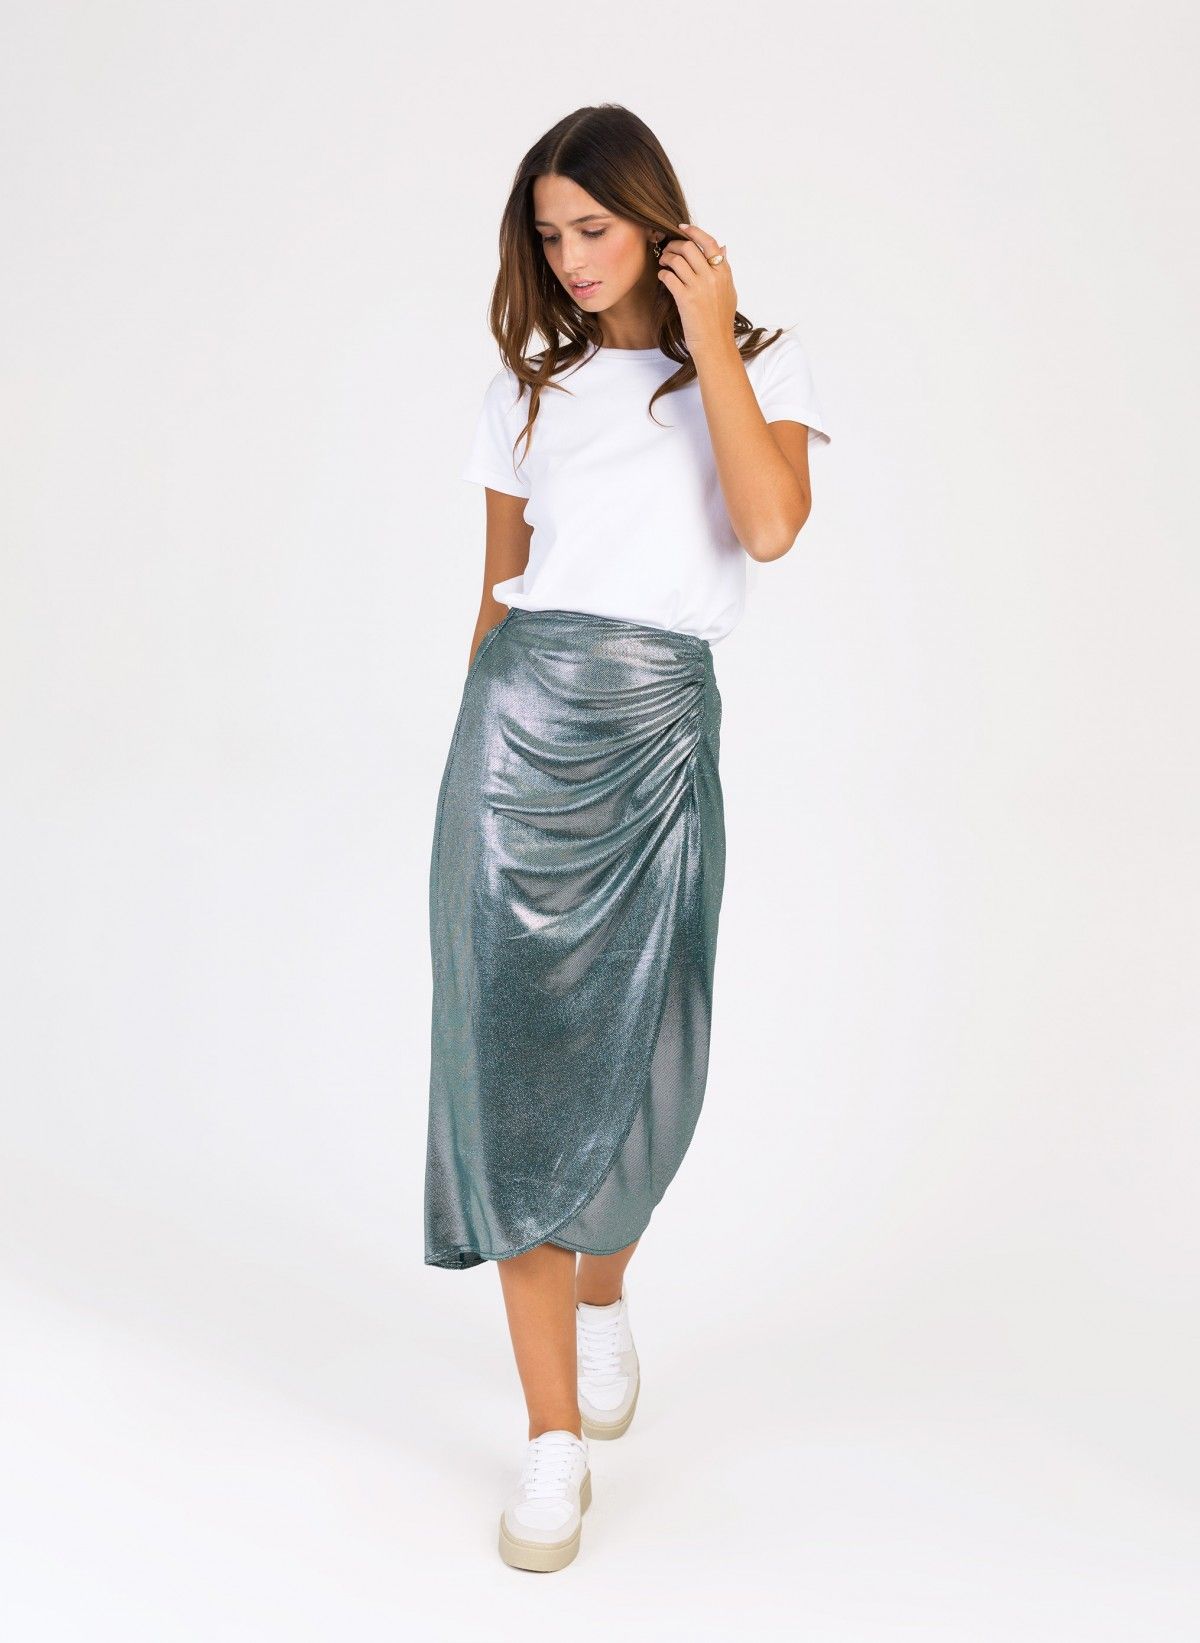 Jacksone long skirt